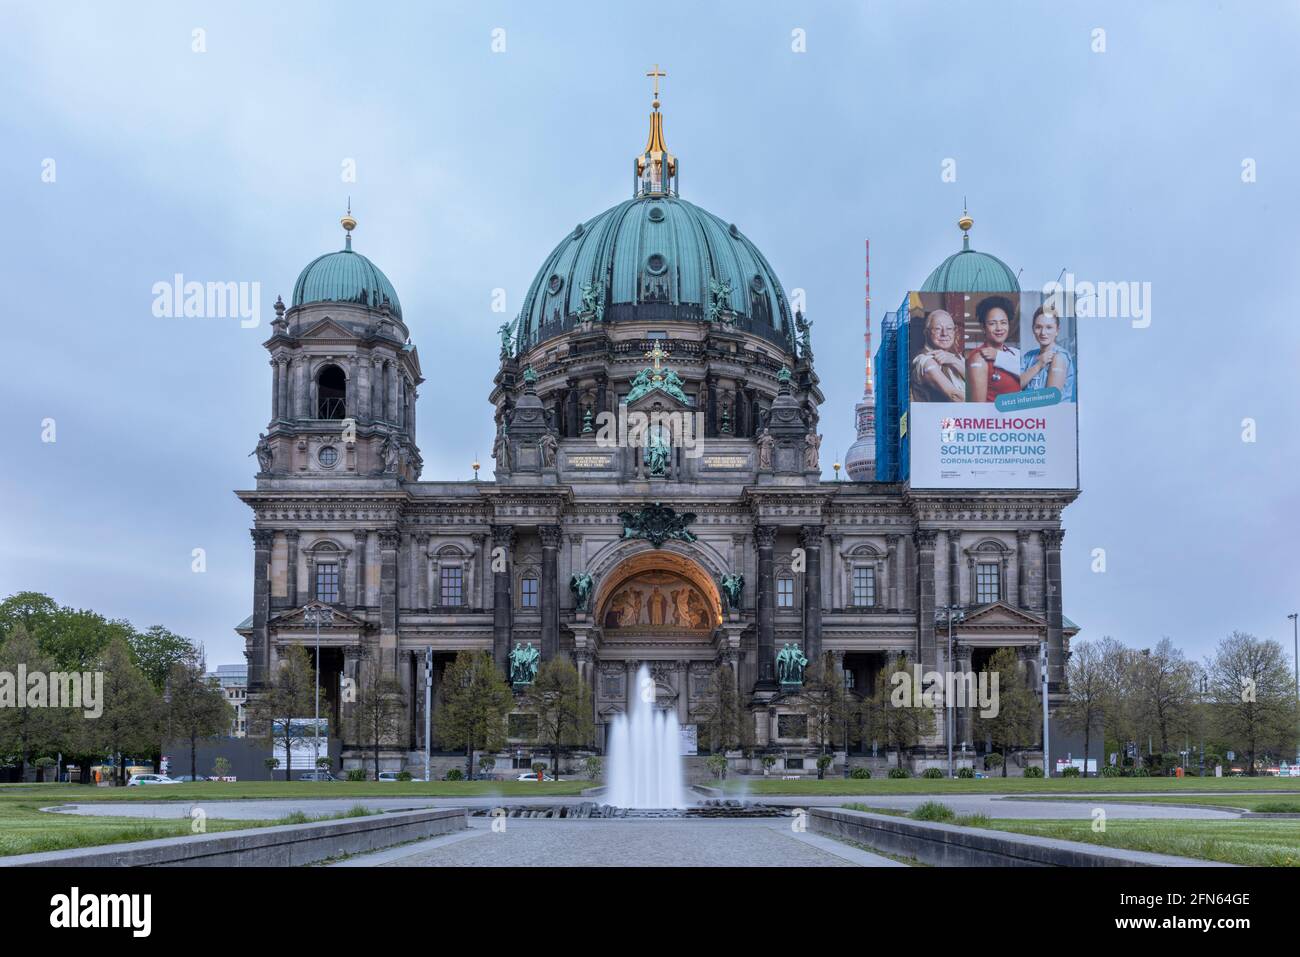 La Cattedrale di Berlino è uno dei molti punti di riferimento del centro della capitale tedesca. Foto Stock